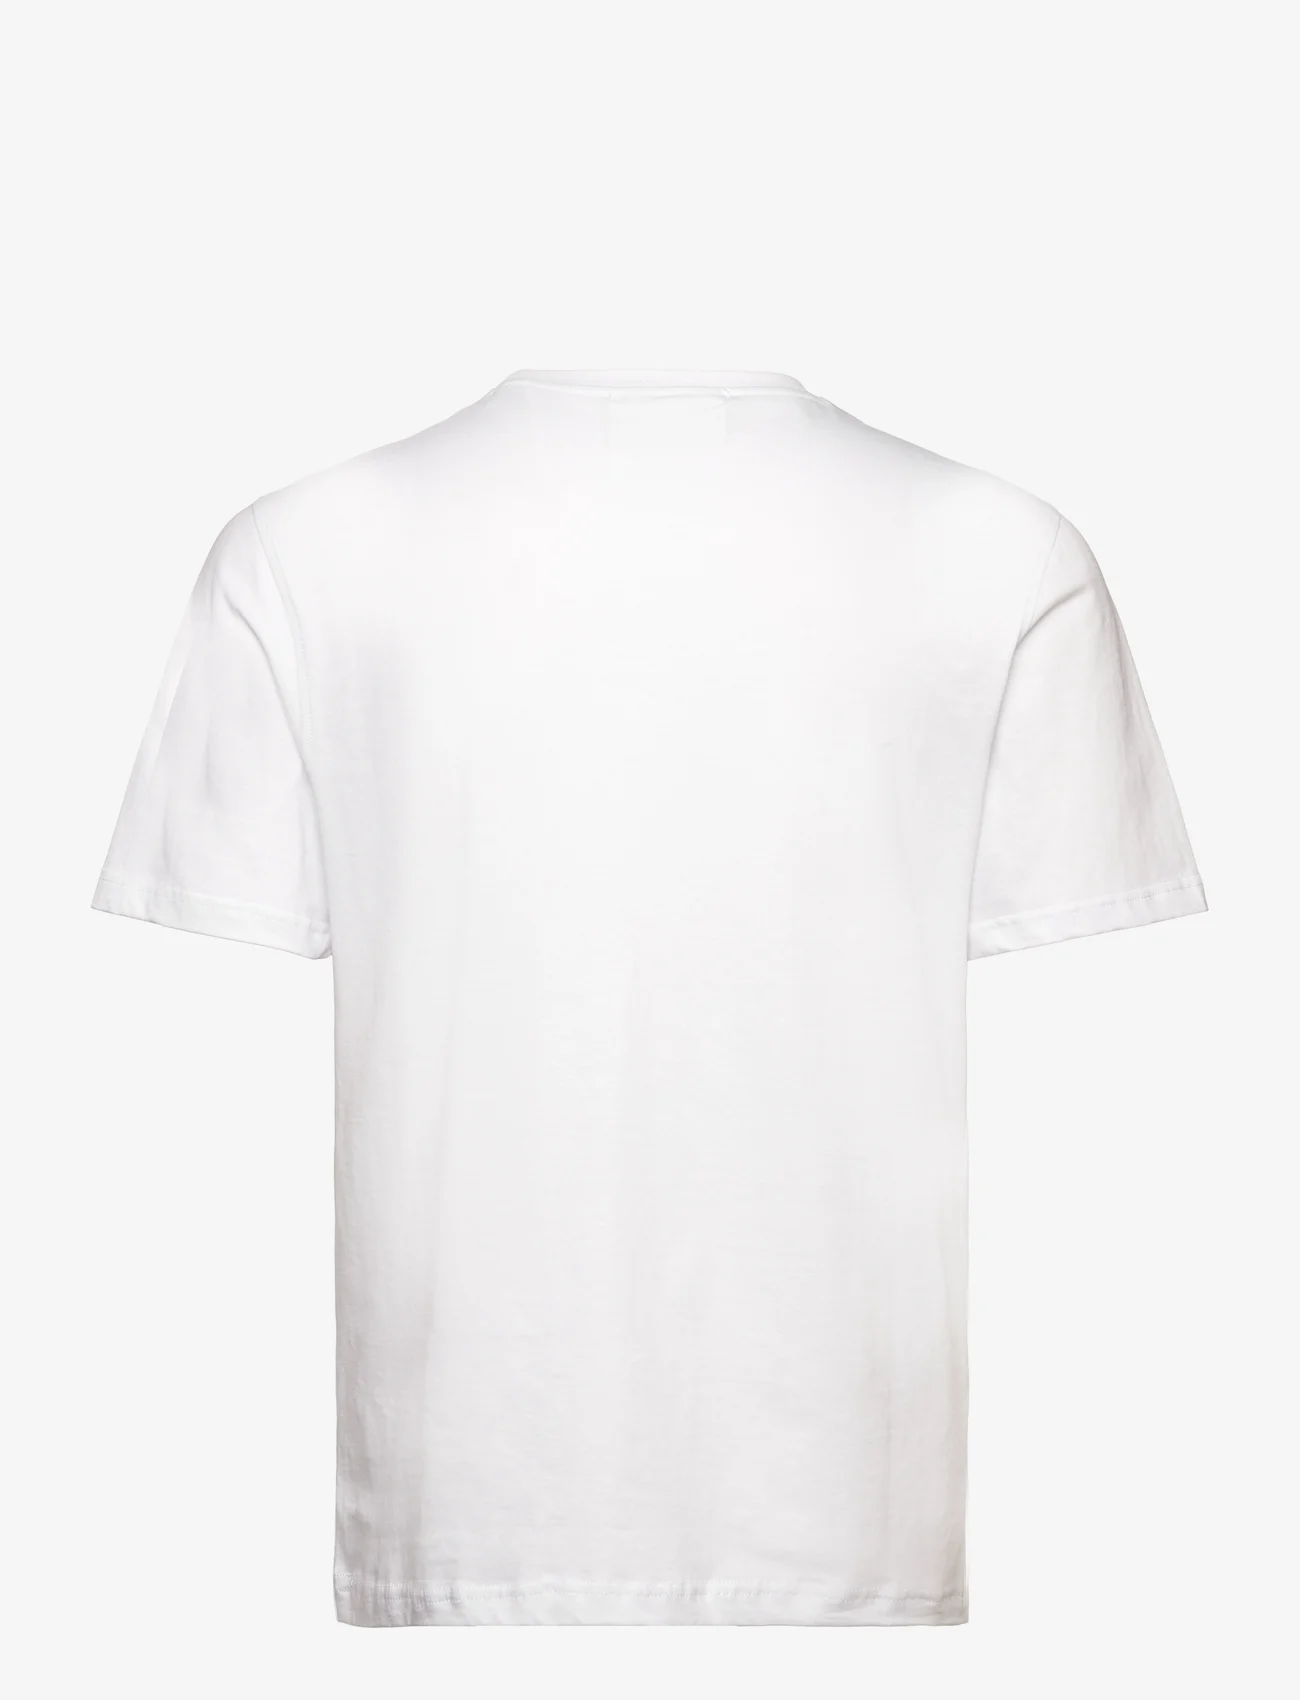 HAN Kjøbenhavn - Regular T-shirt Short sleeve - white - 1